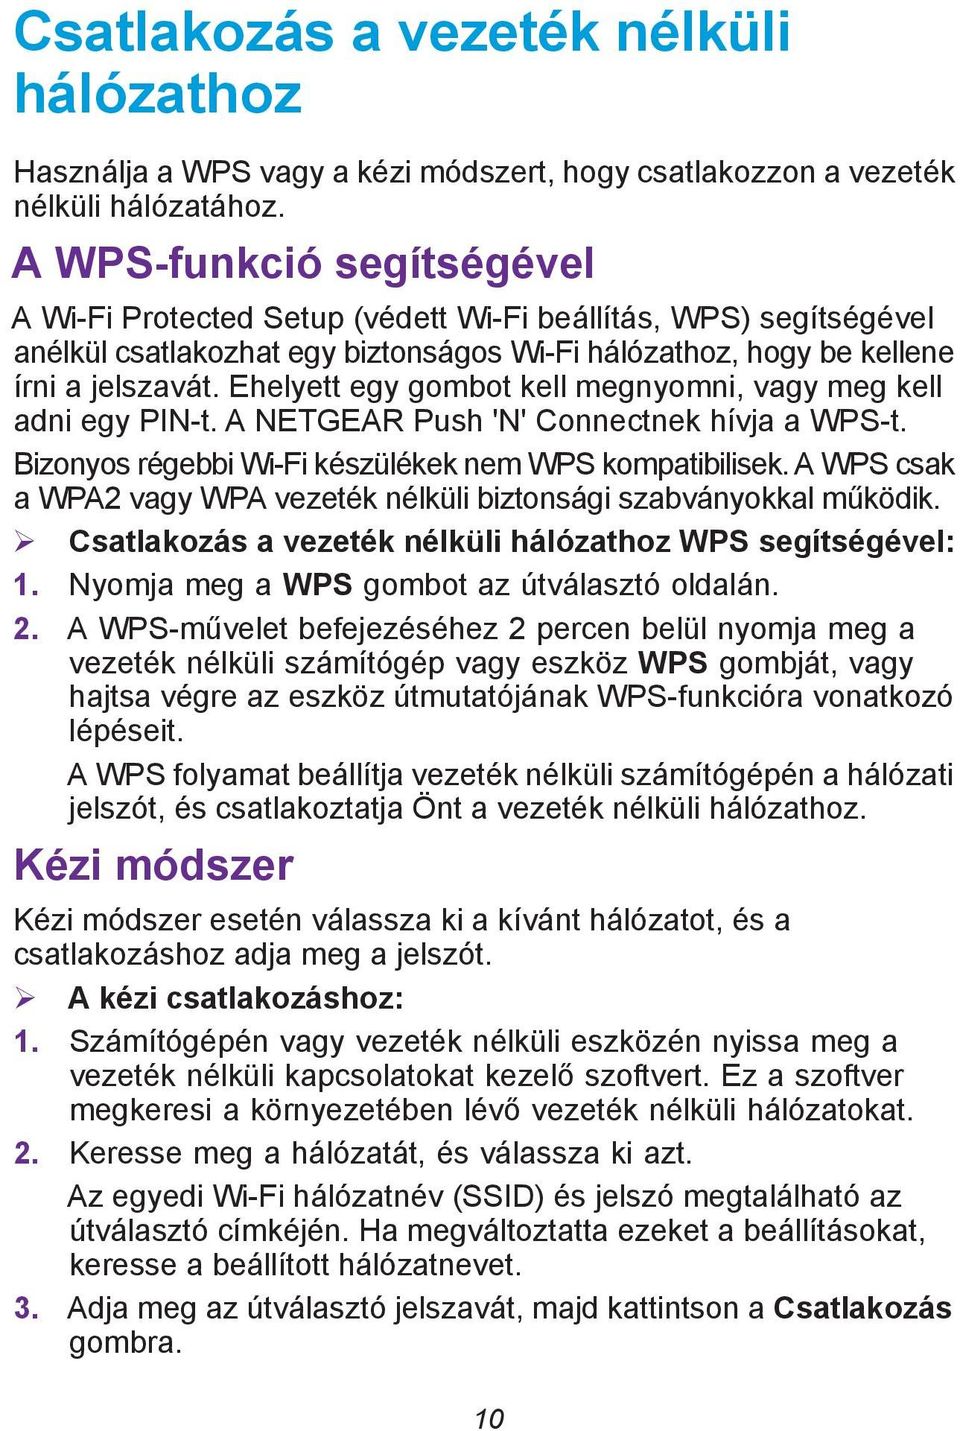 Ehelyett egy gombot kell megnyomni, vagy meg kell adni egy PIN-t. A NETGEAR Push 'N' Connectnek hívja a WPS-t. Bizonyos régebbi Wi-Fi készülékek nem WPS kompatibilisek.